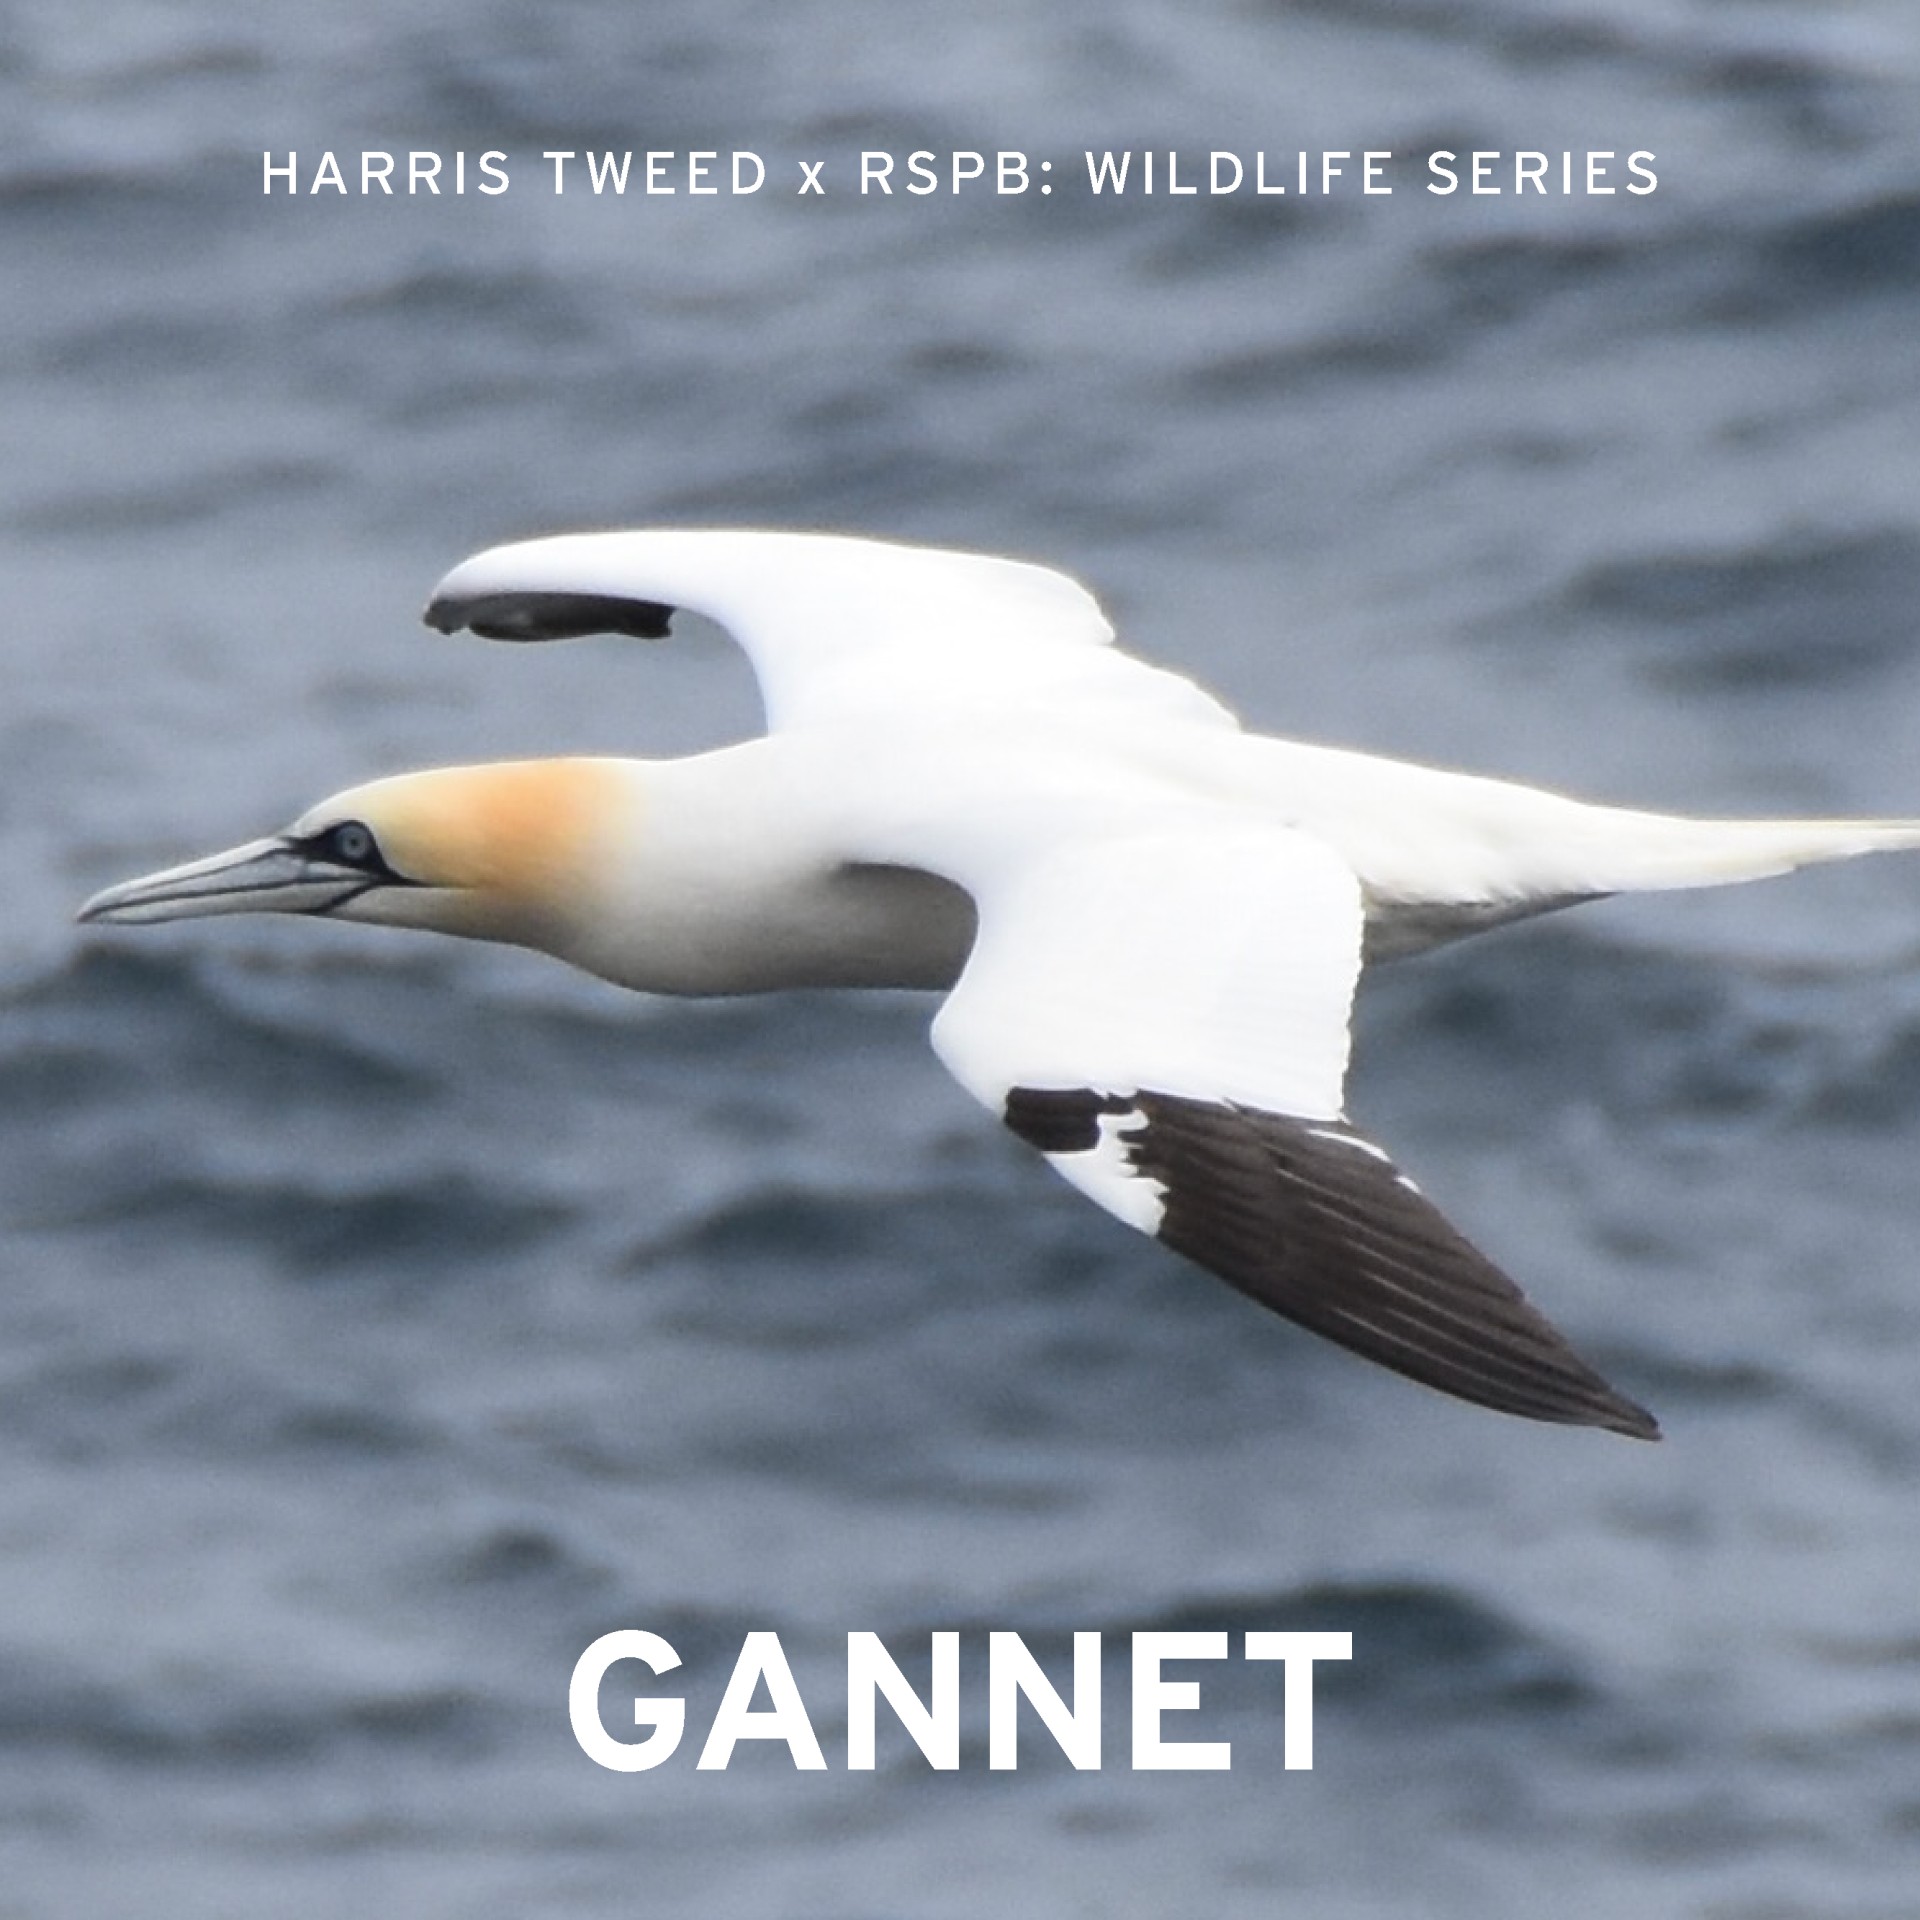 Harris Tweed RSPB gannet